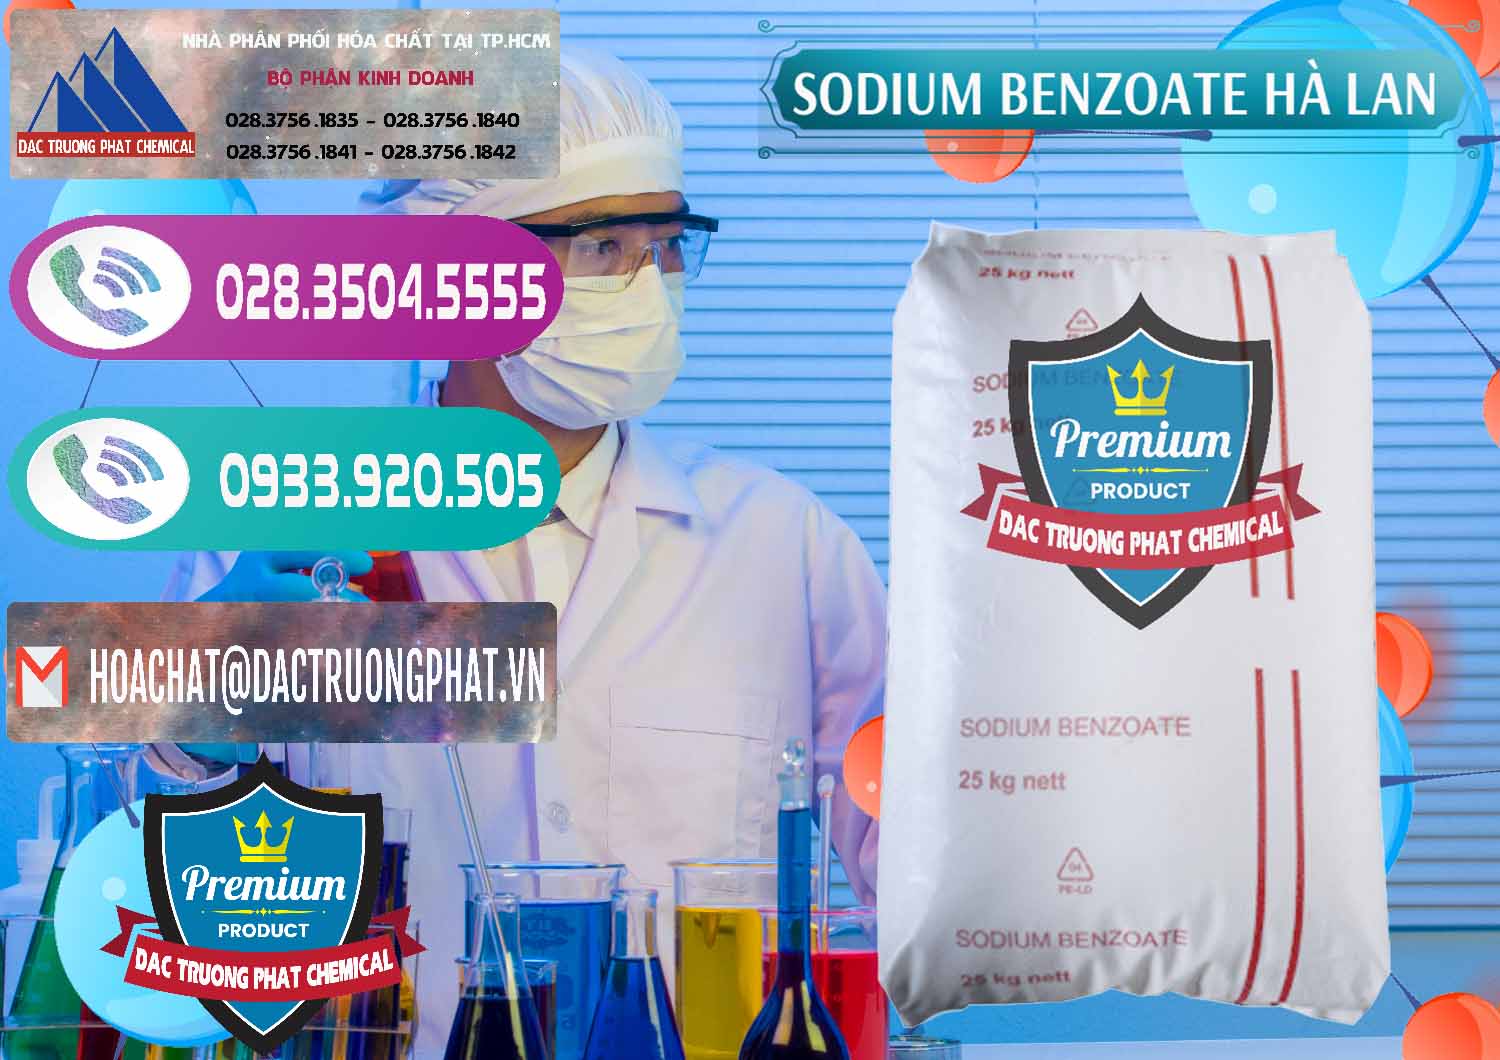 Nhà cung cấp & bán Sodium Benzoate - Mốc Bột Chữ Cam Hà Lan Netherlands - 0360 - Cty chuyên bán - cung cấp hóa chất tại TP.HCM - hoachatxulynuoc.com